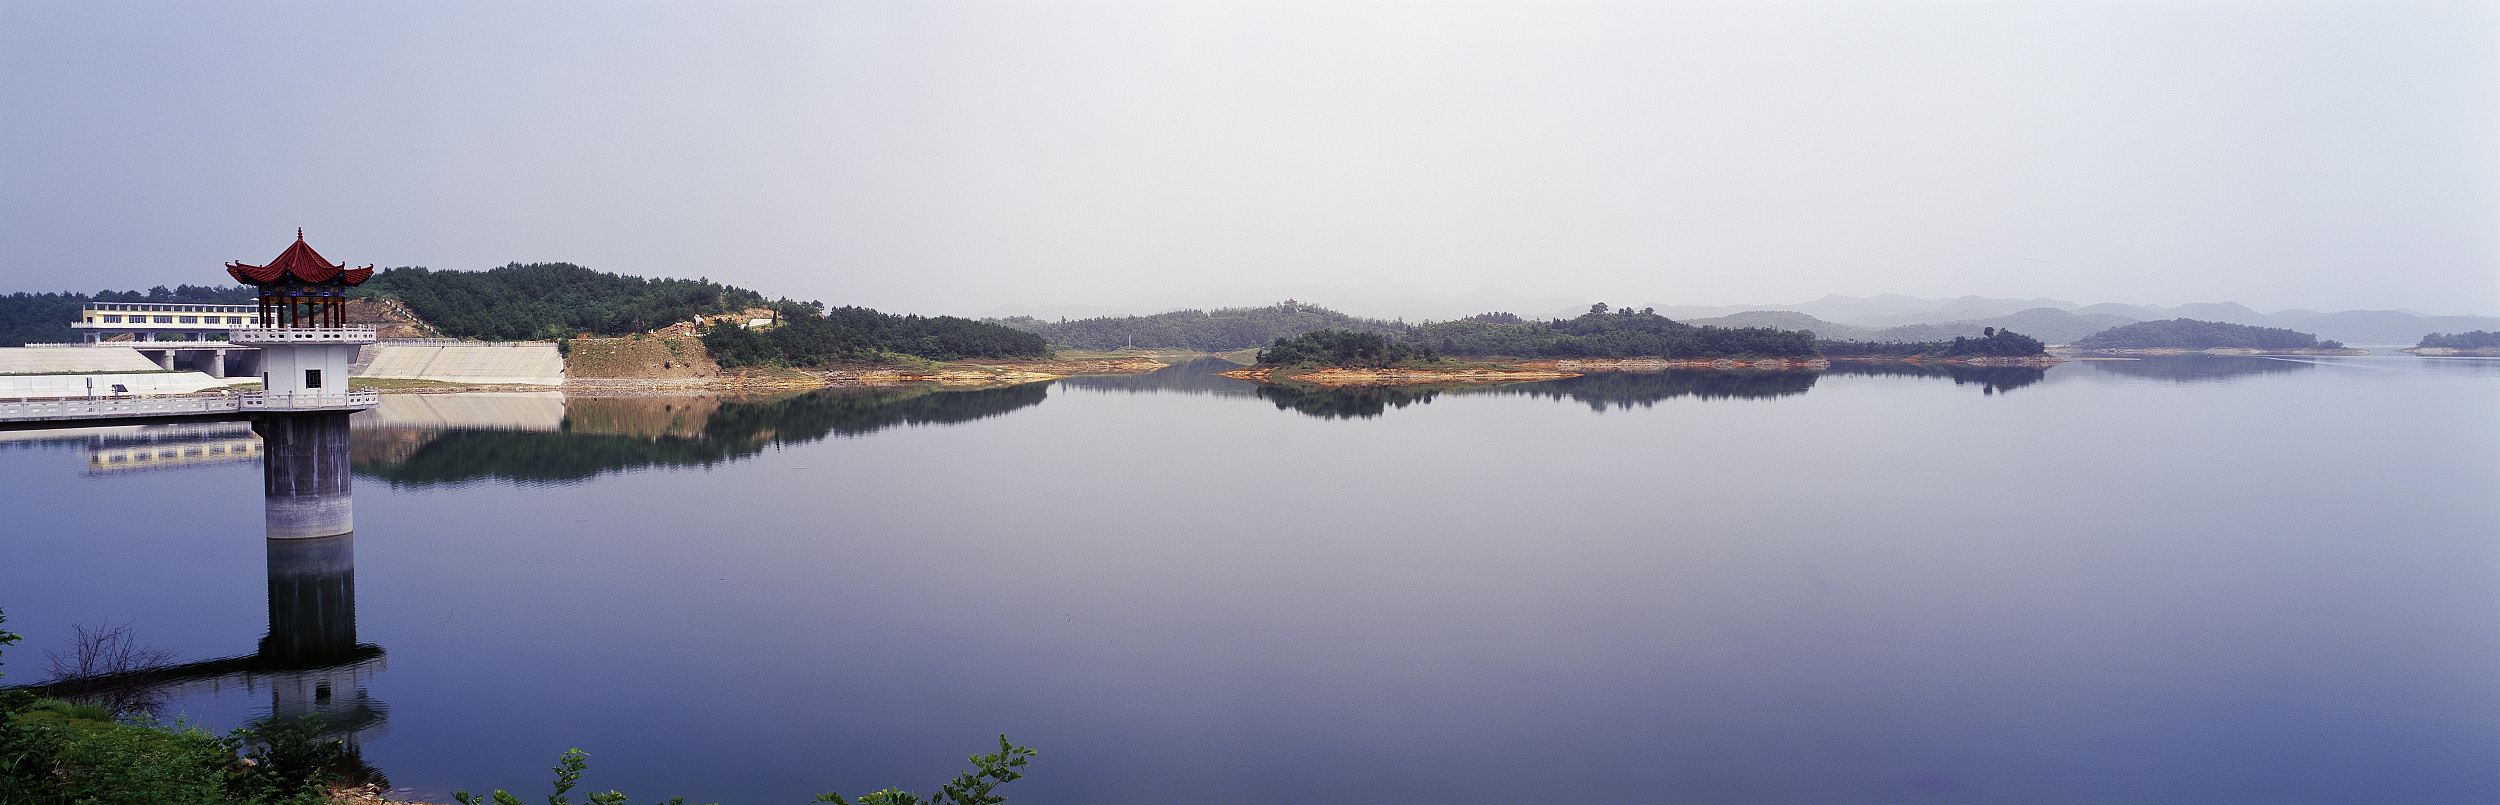 洪山琵琶湖图片